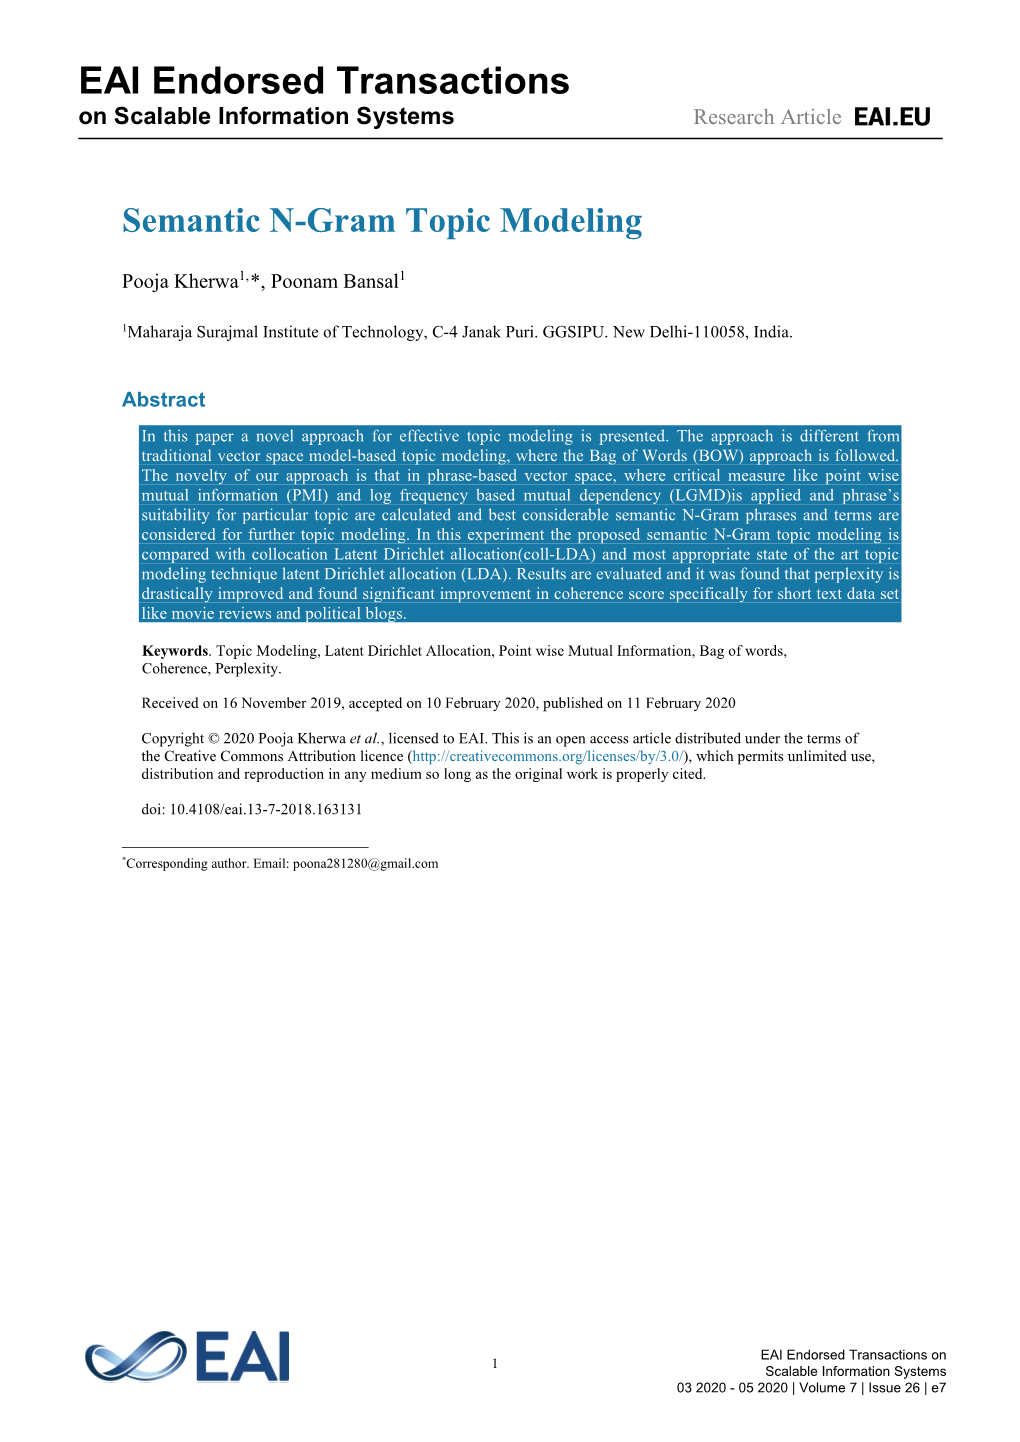 Semantic N-Gram Topic Modeling